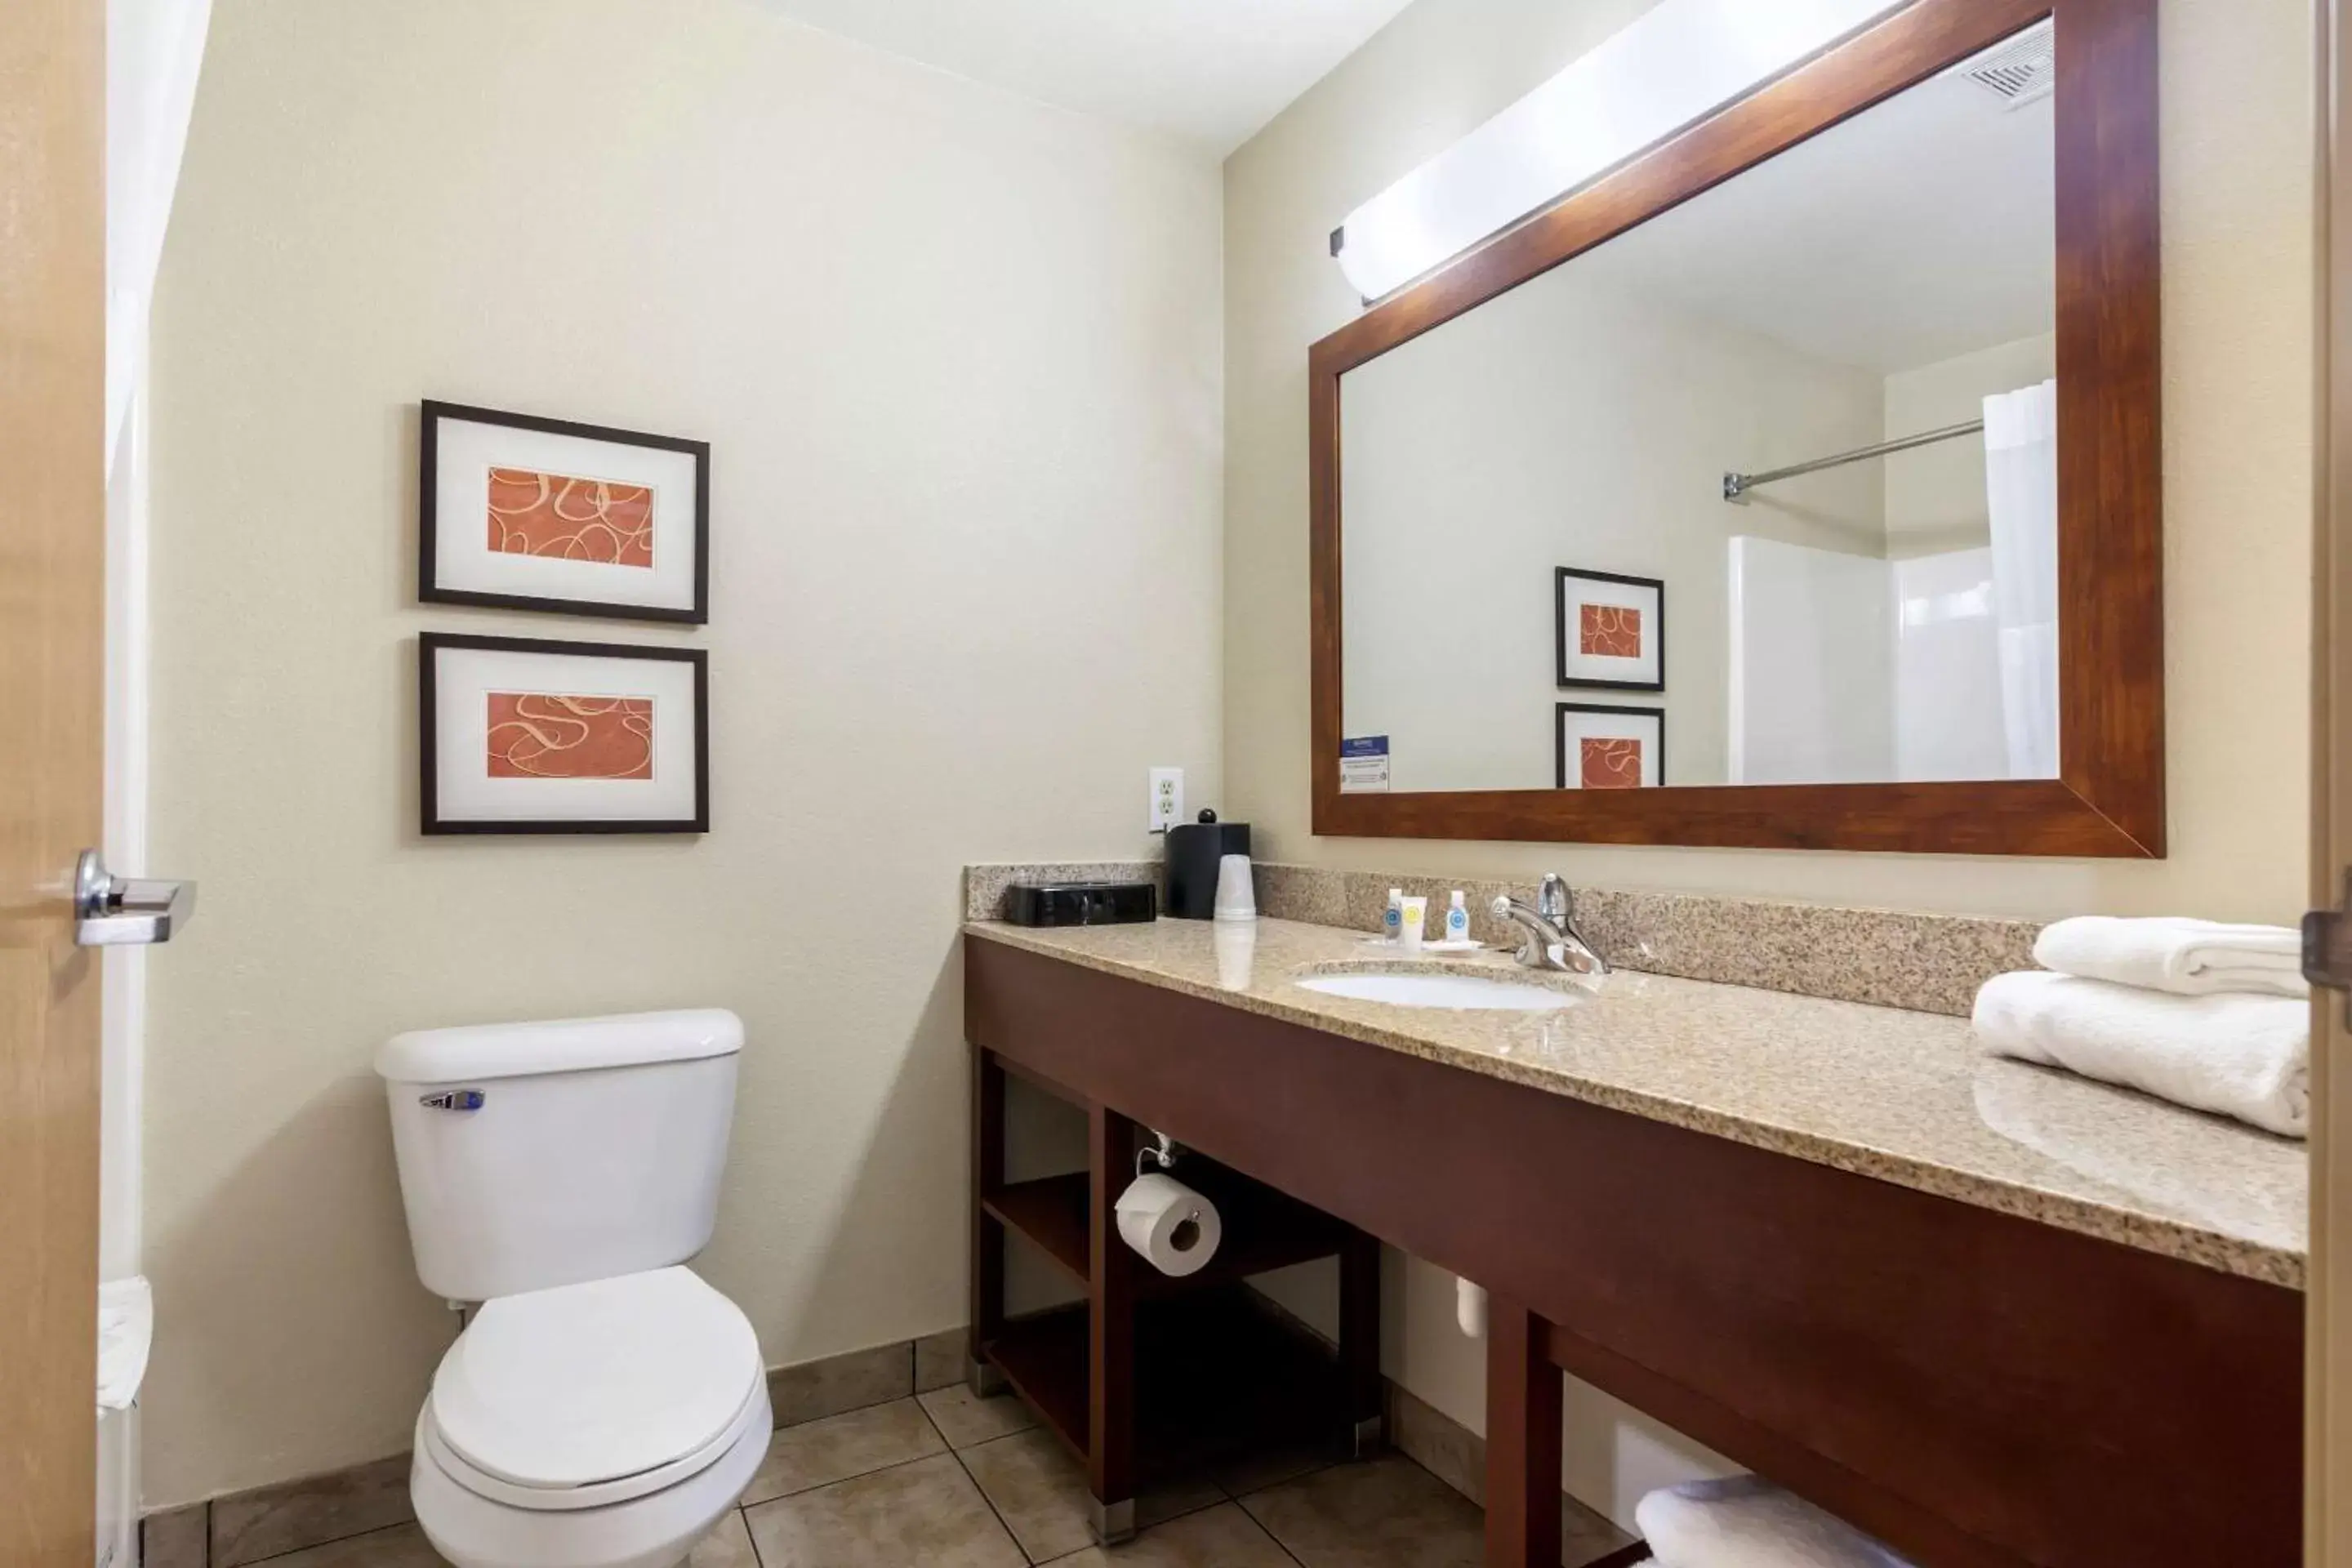 Bedroom, Bathroom in Comfort Suites Johnson Creek Conference